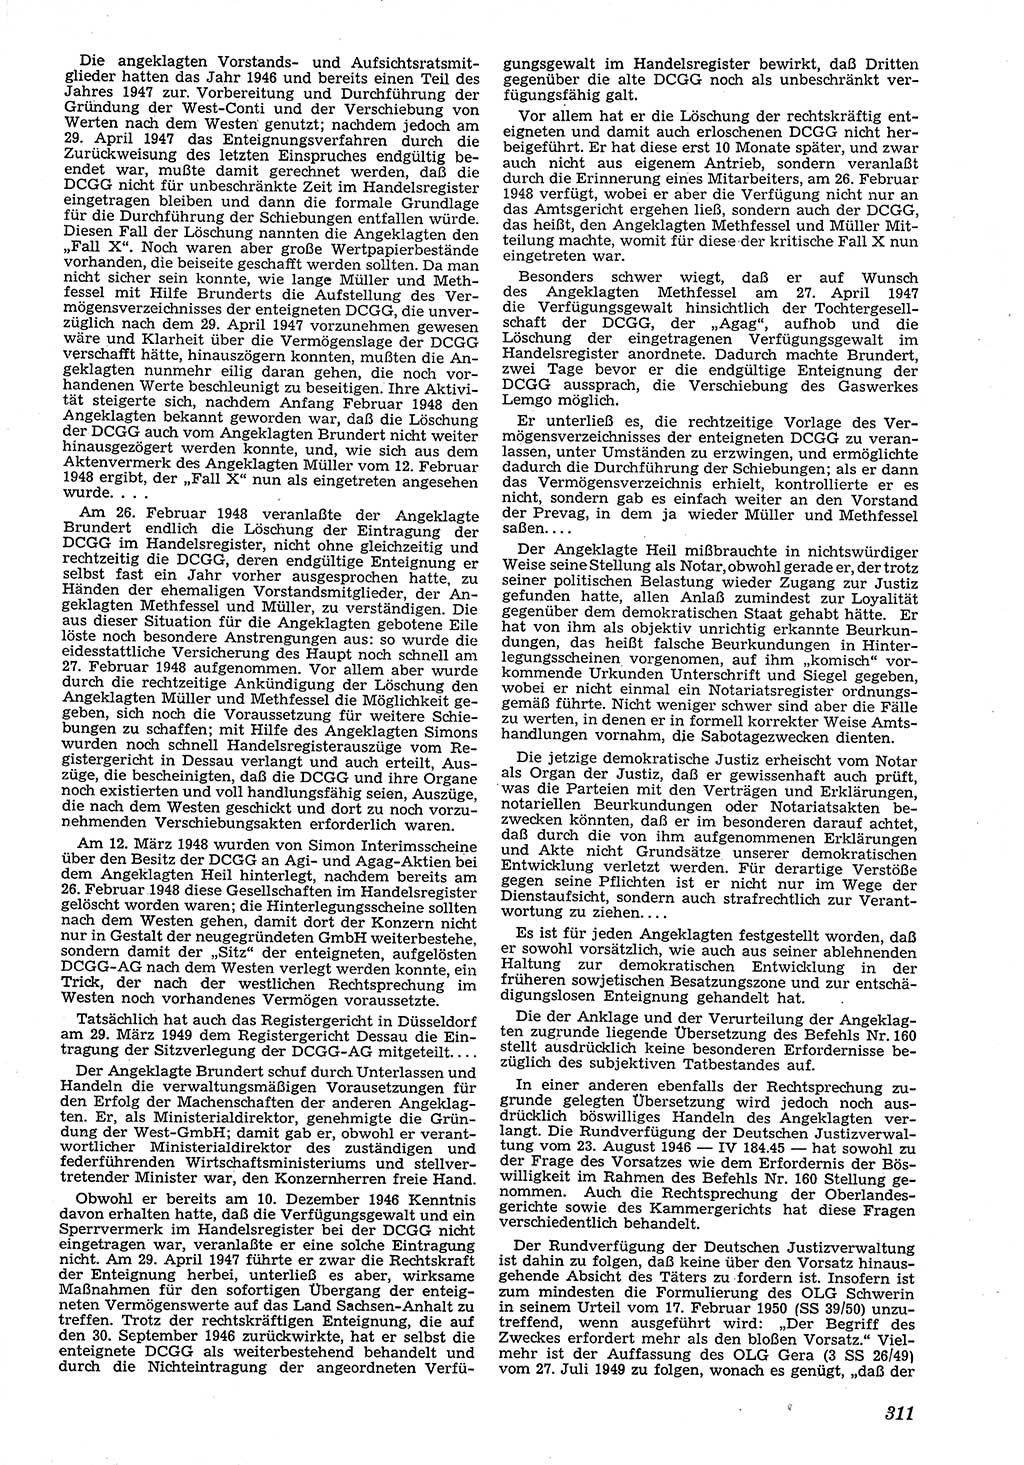 Neue Justiz (NJ), Zeitschrift für Recht und Rechtswissenschaft [Deutsche Demokratische Republik (DDR)], 4. Jahrgang 1950, Seite 311 (NJ DDR 1950, S. 311)